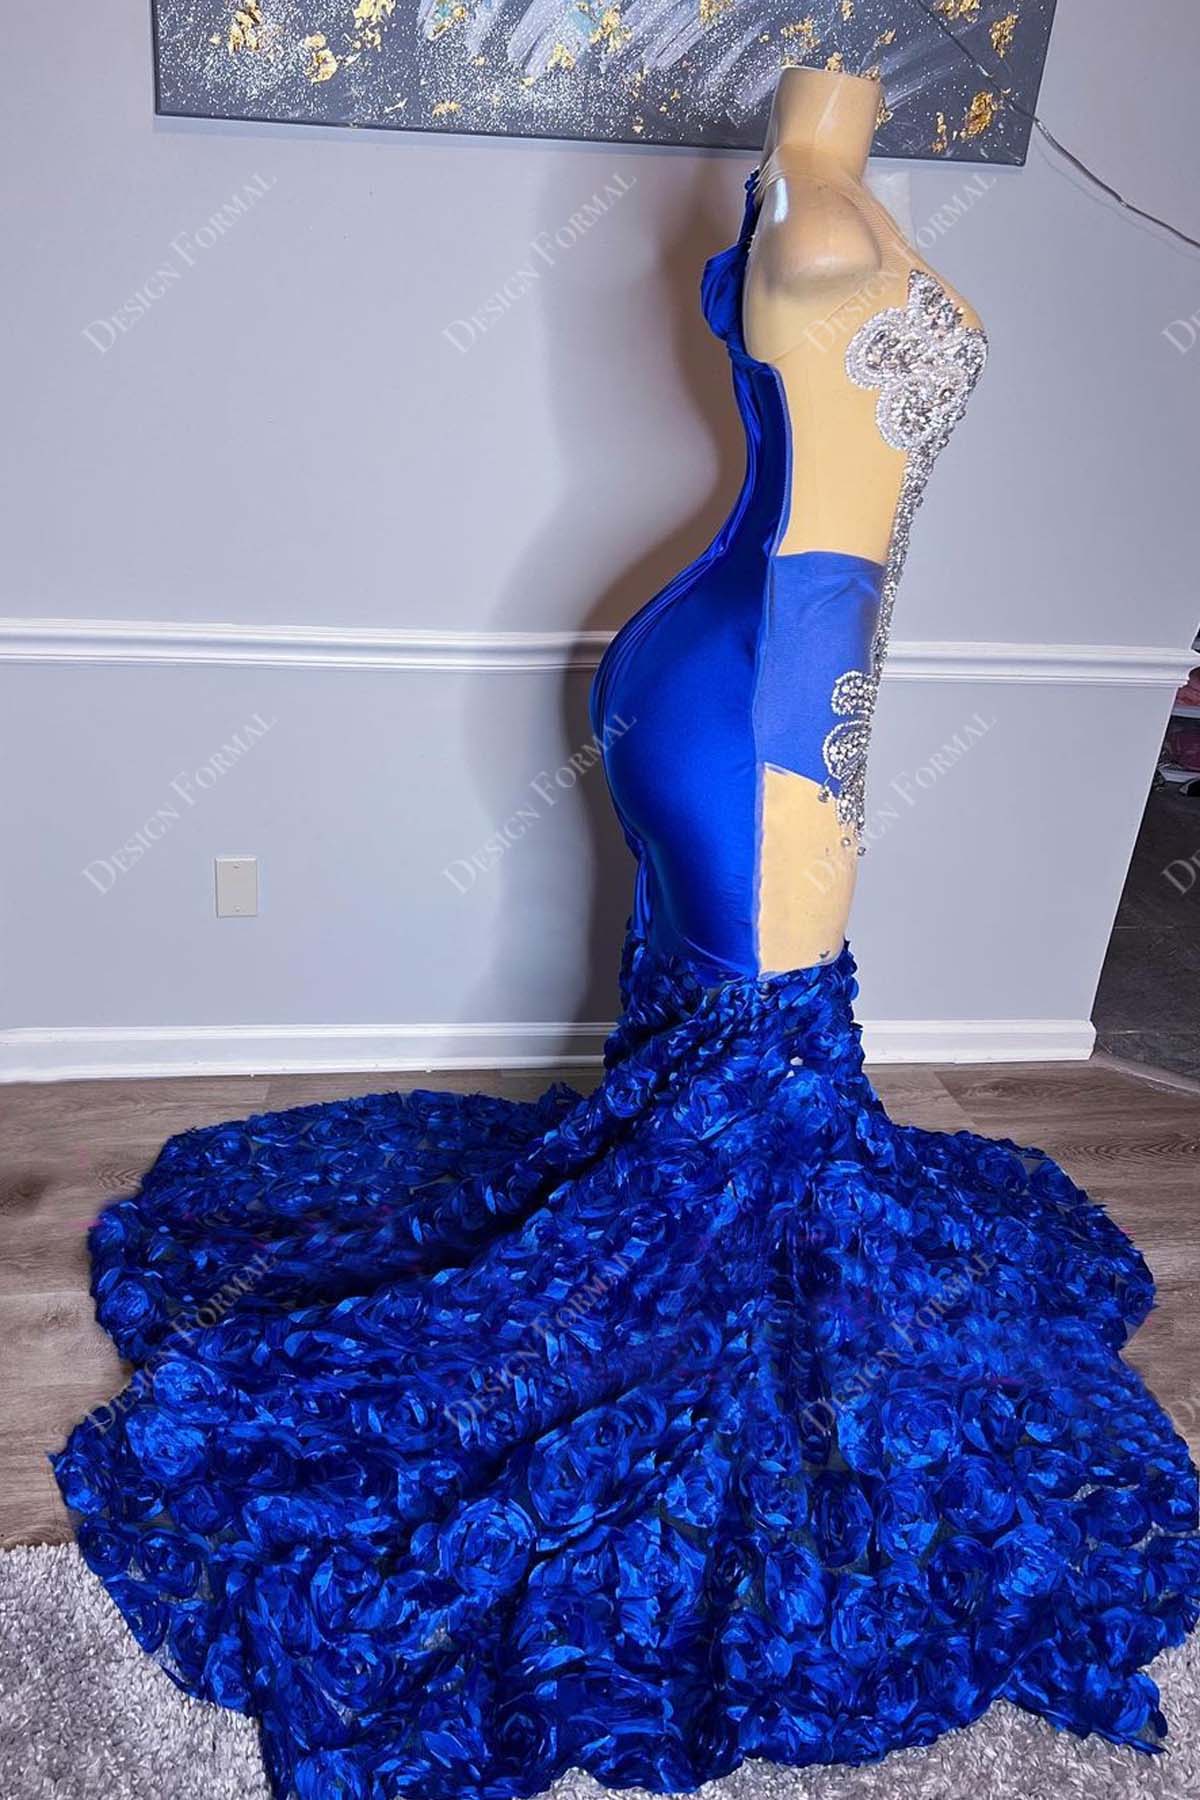 Rhinestones Embellished Sky Blue Tulle Handmade Trumpet Prom Dress